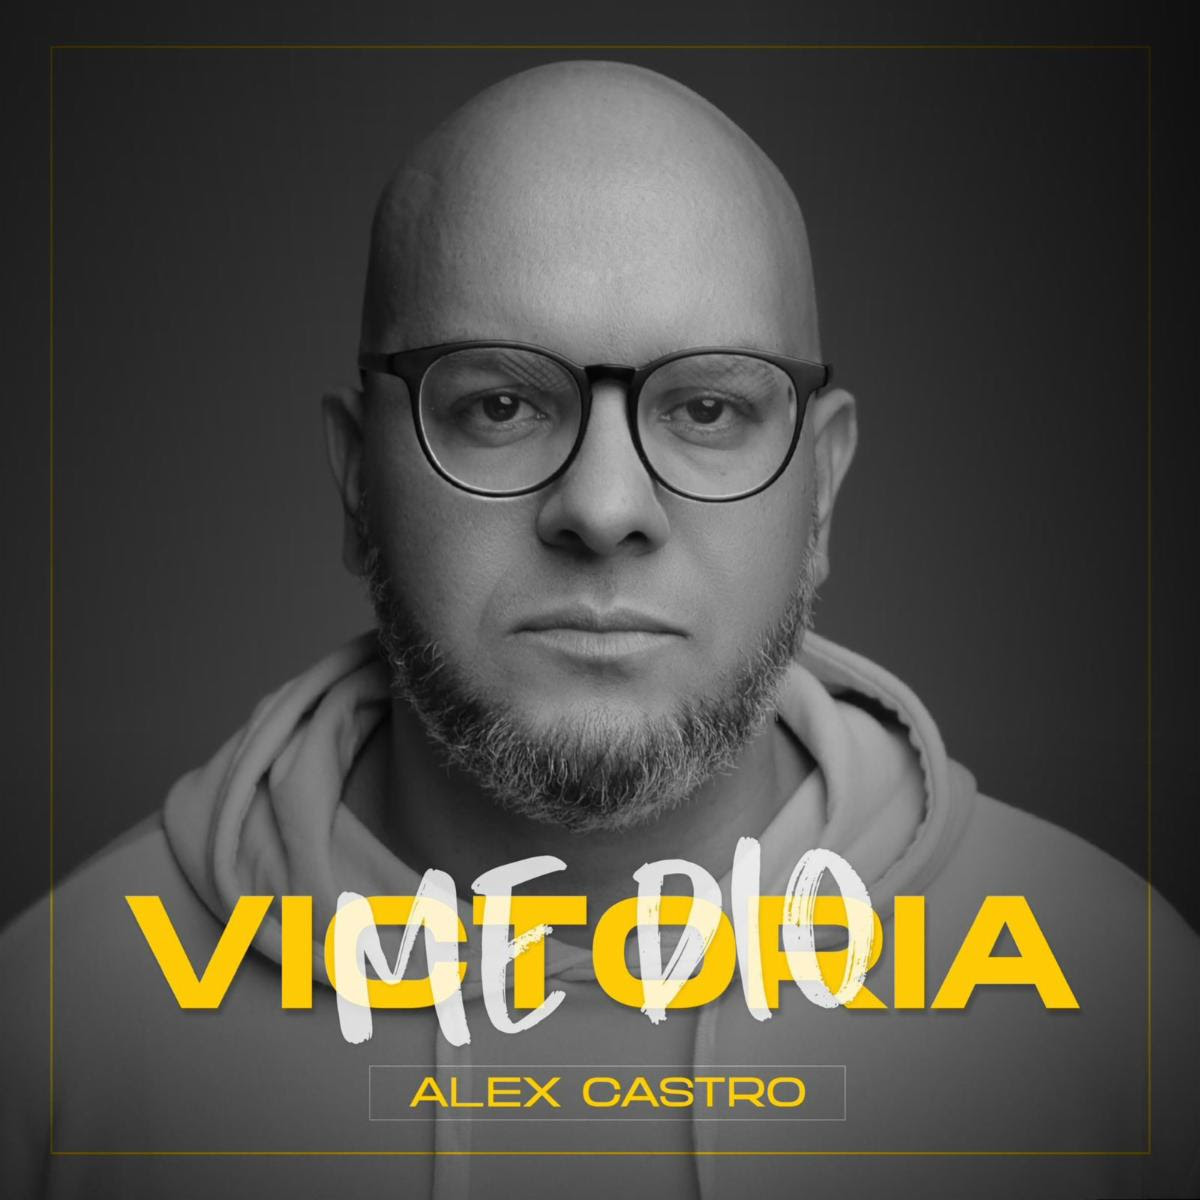  Victoria Me Dio: Lo nuevo de Alex Castro